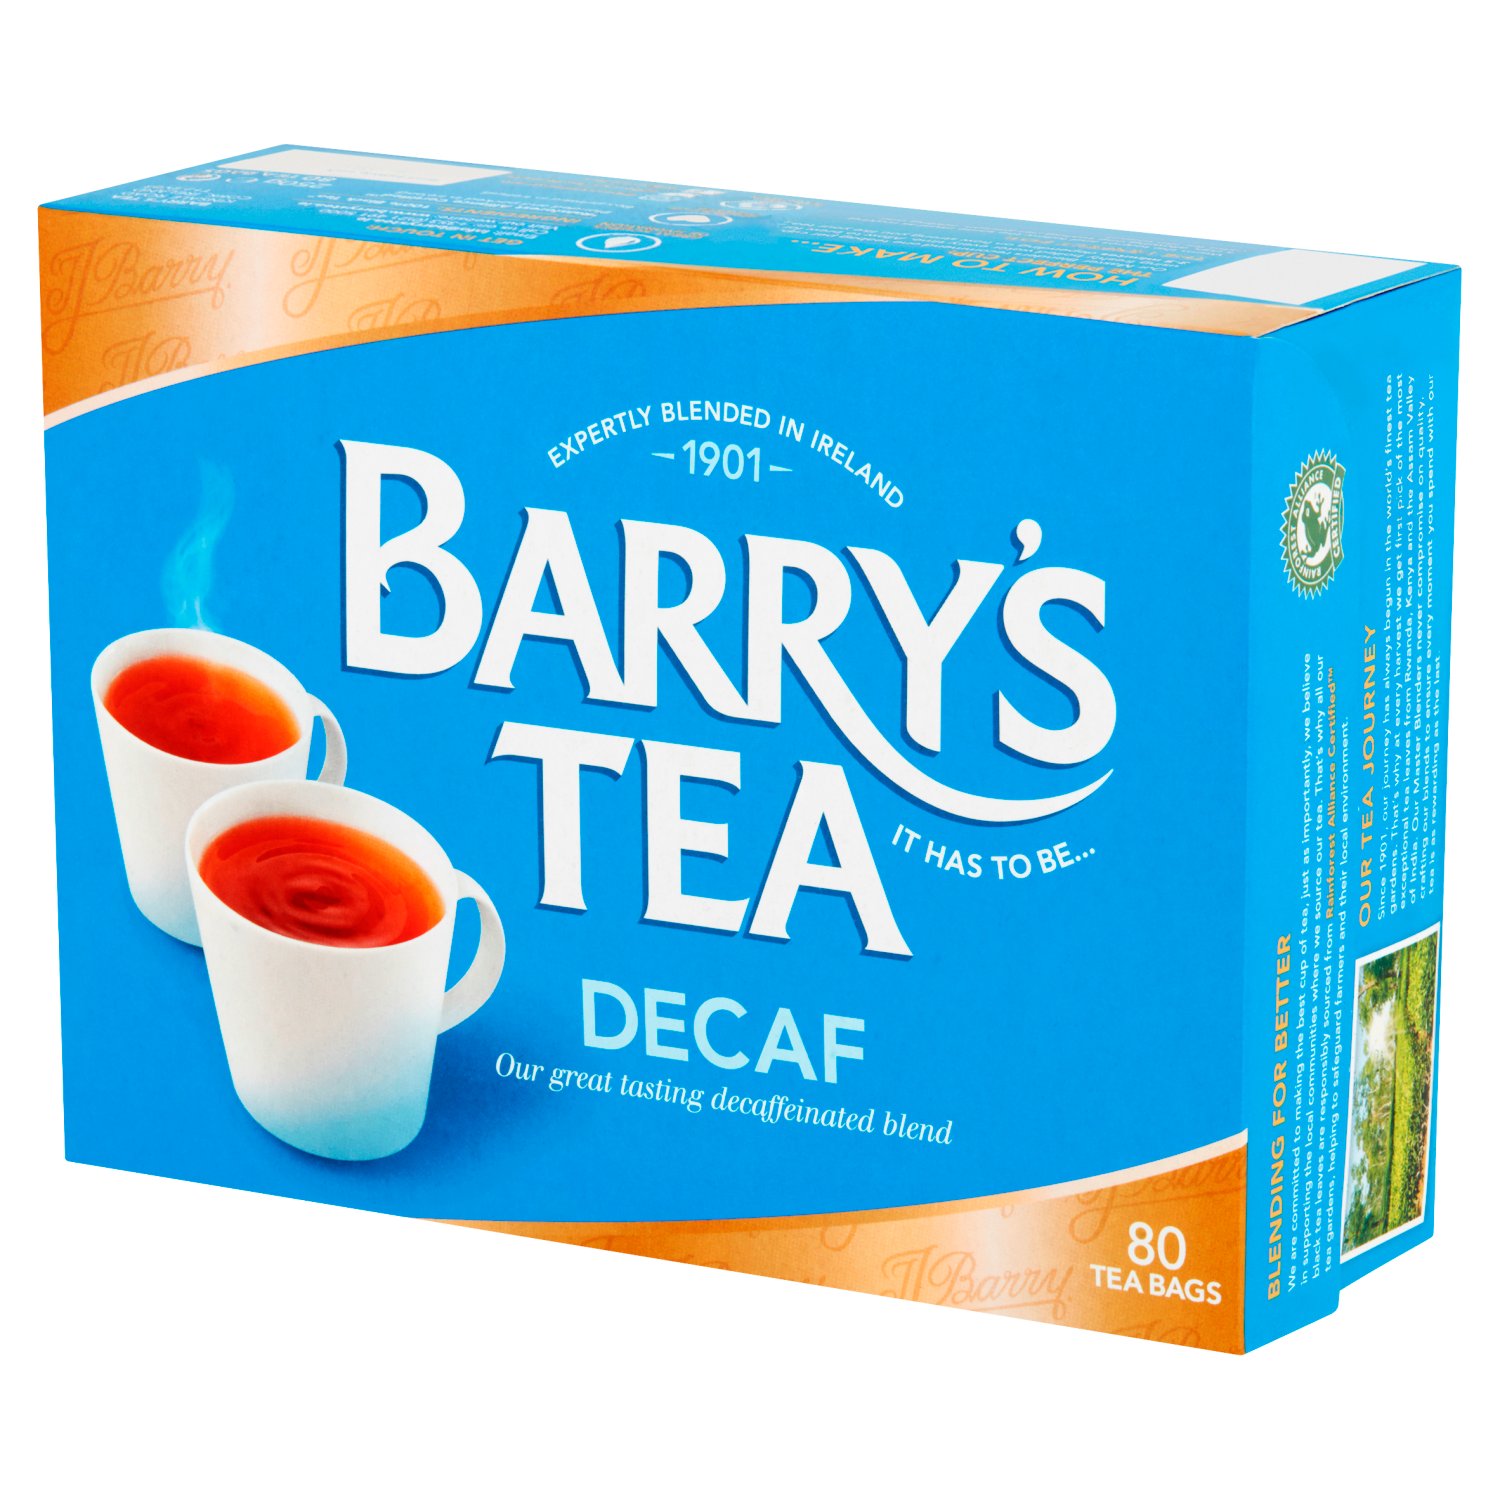 Barry's Decaf Blend Tea 80 Pack (250 g)